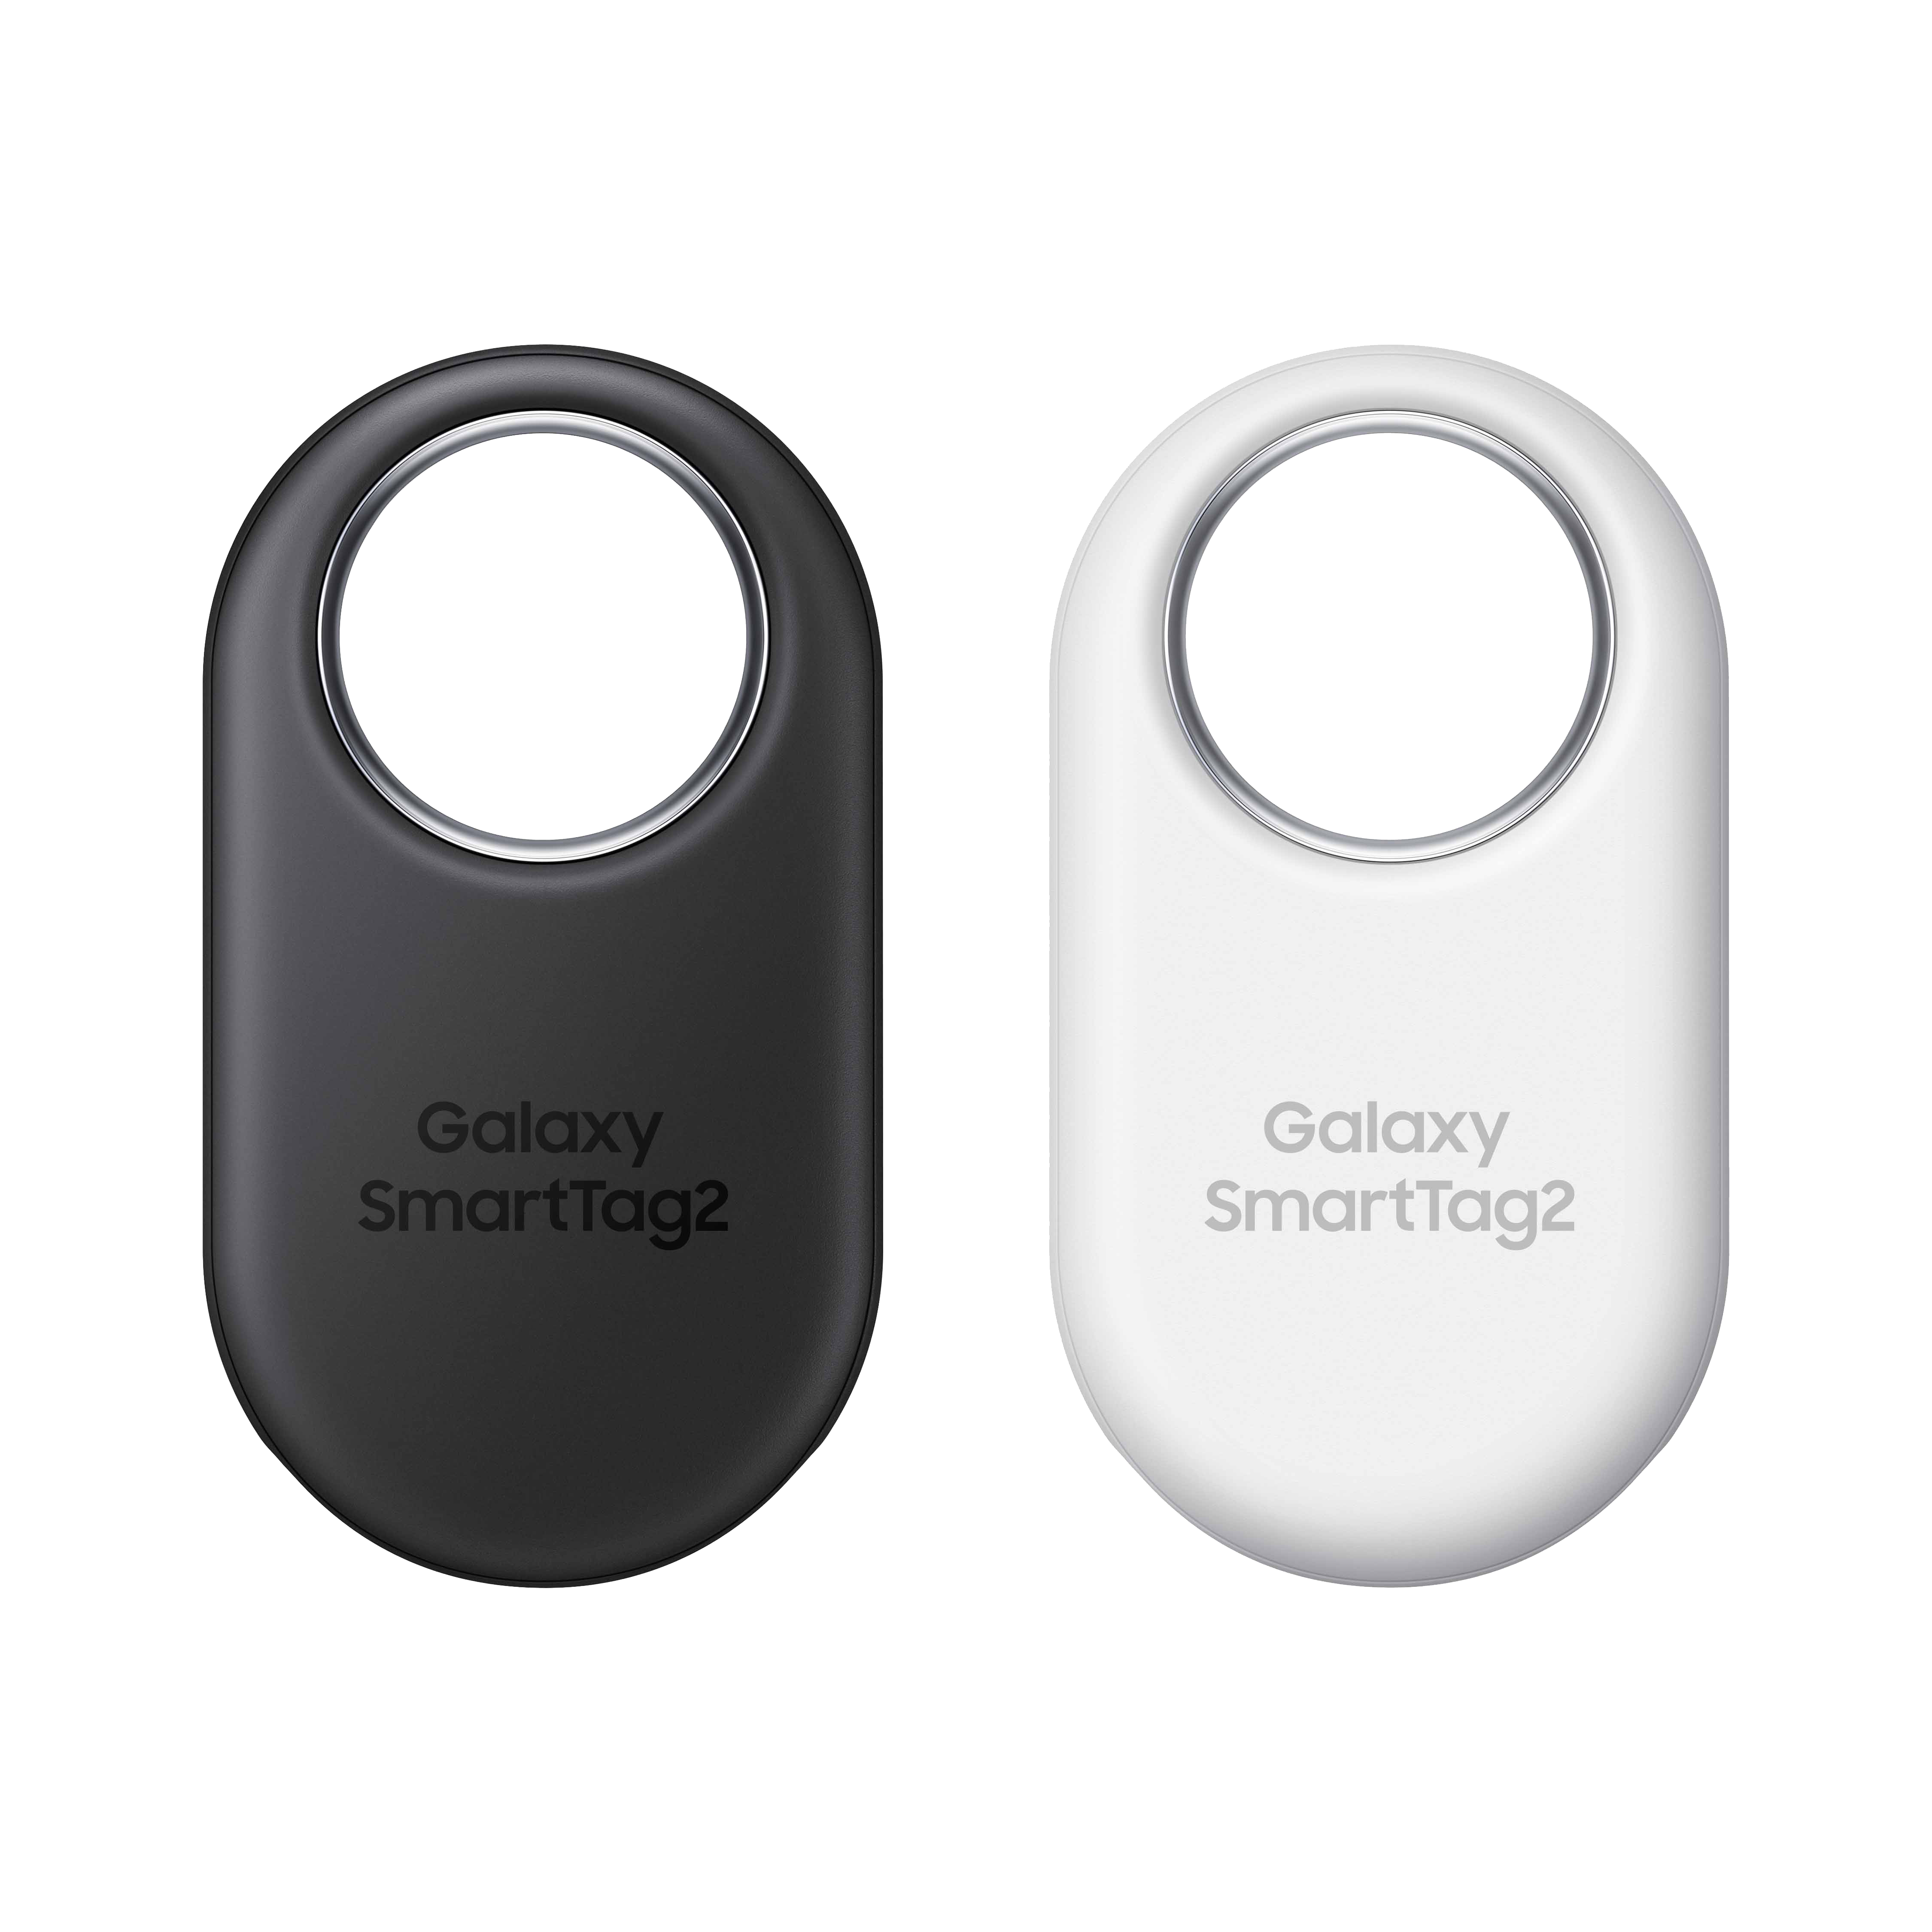 Samsung Galaxy SmartTag - Samsung's Own “AirTags” 